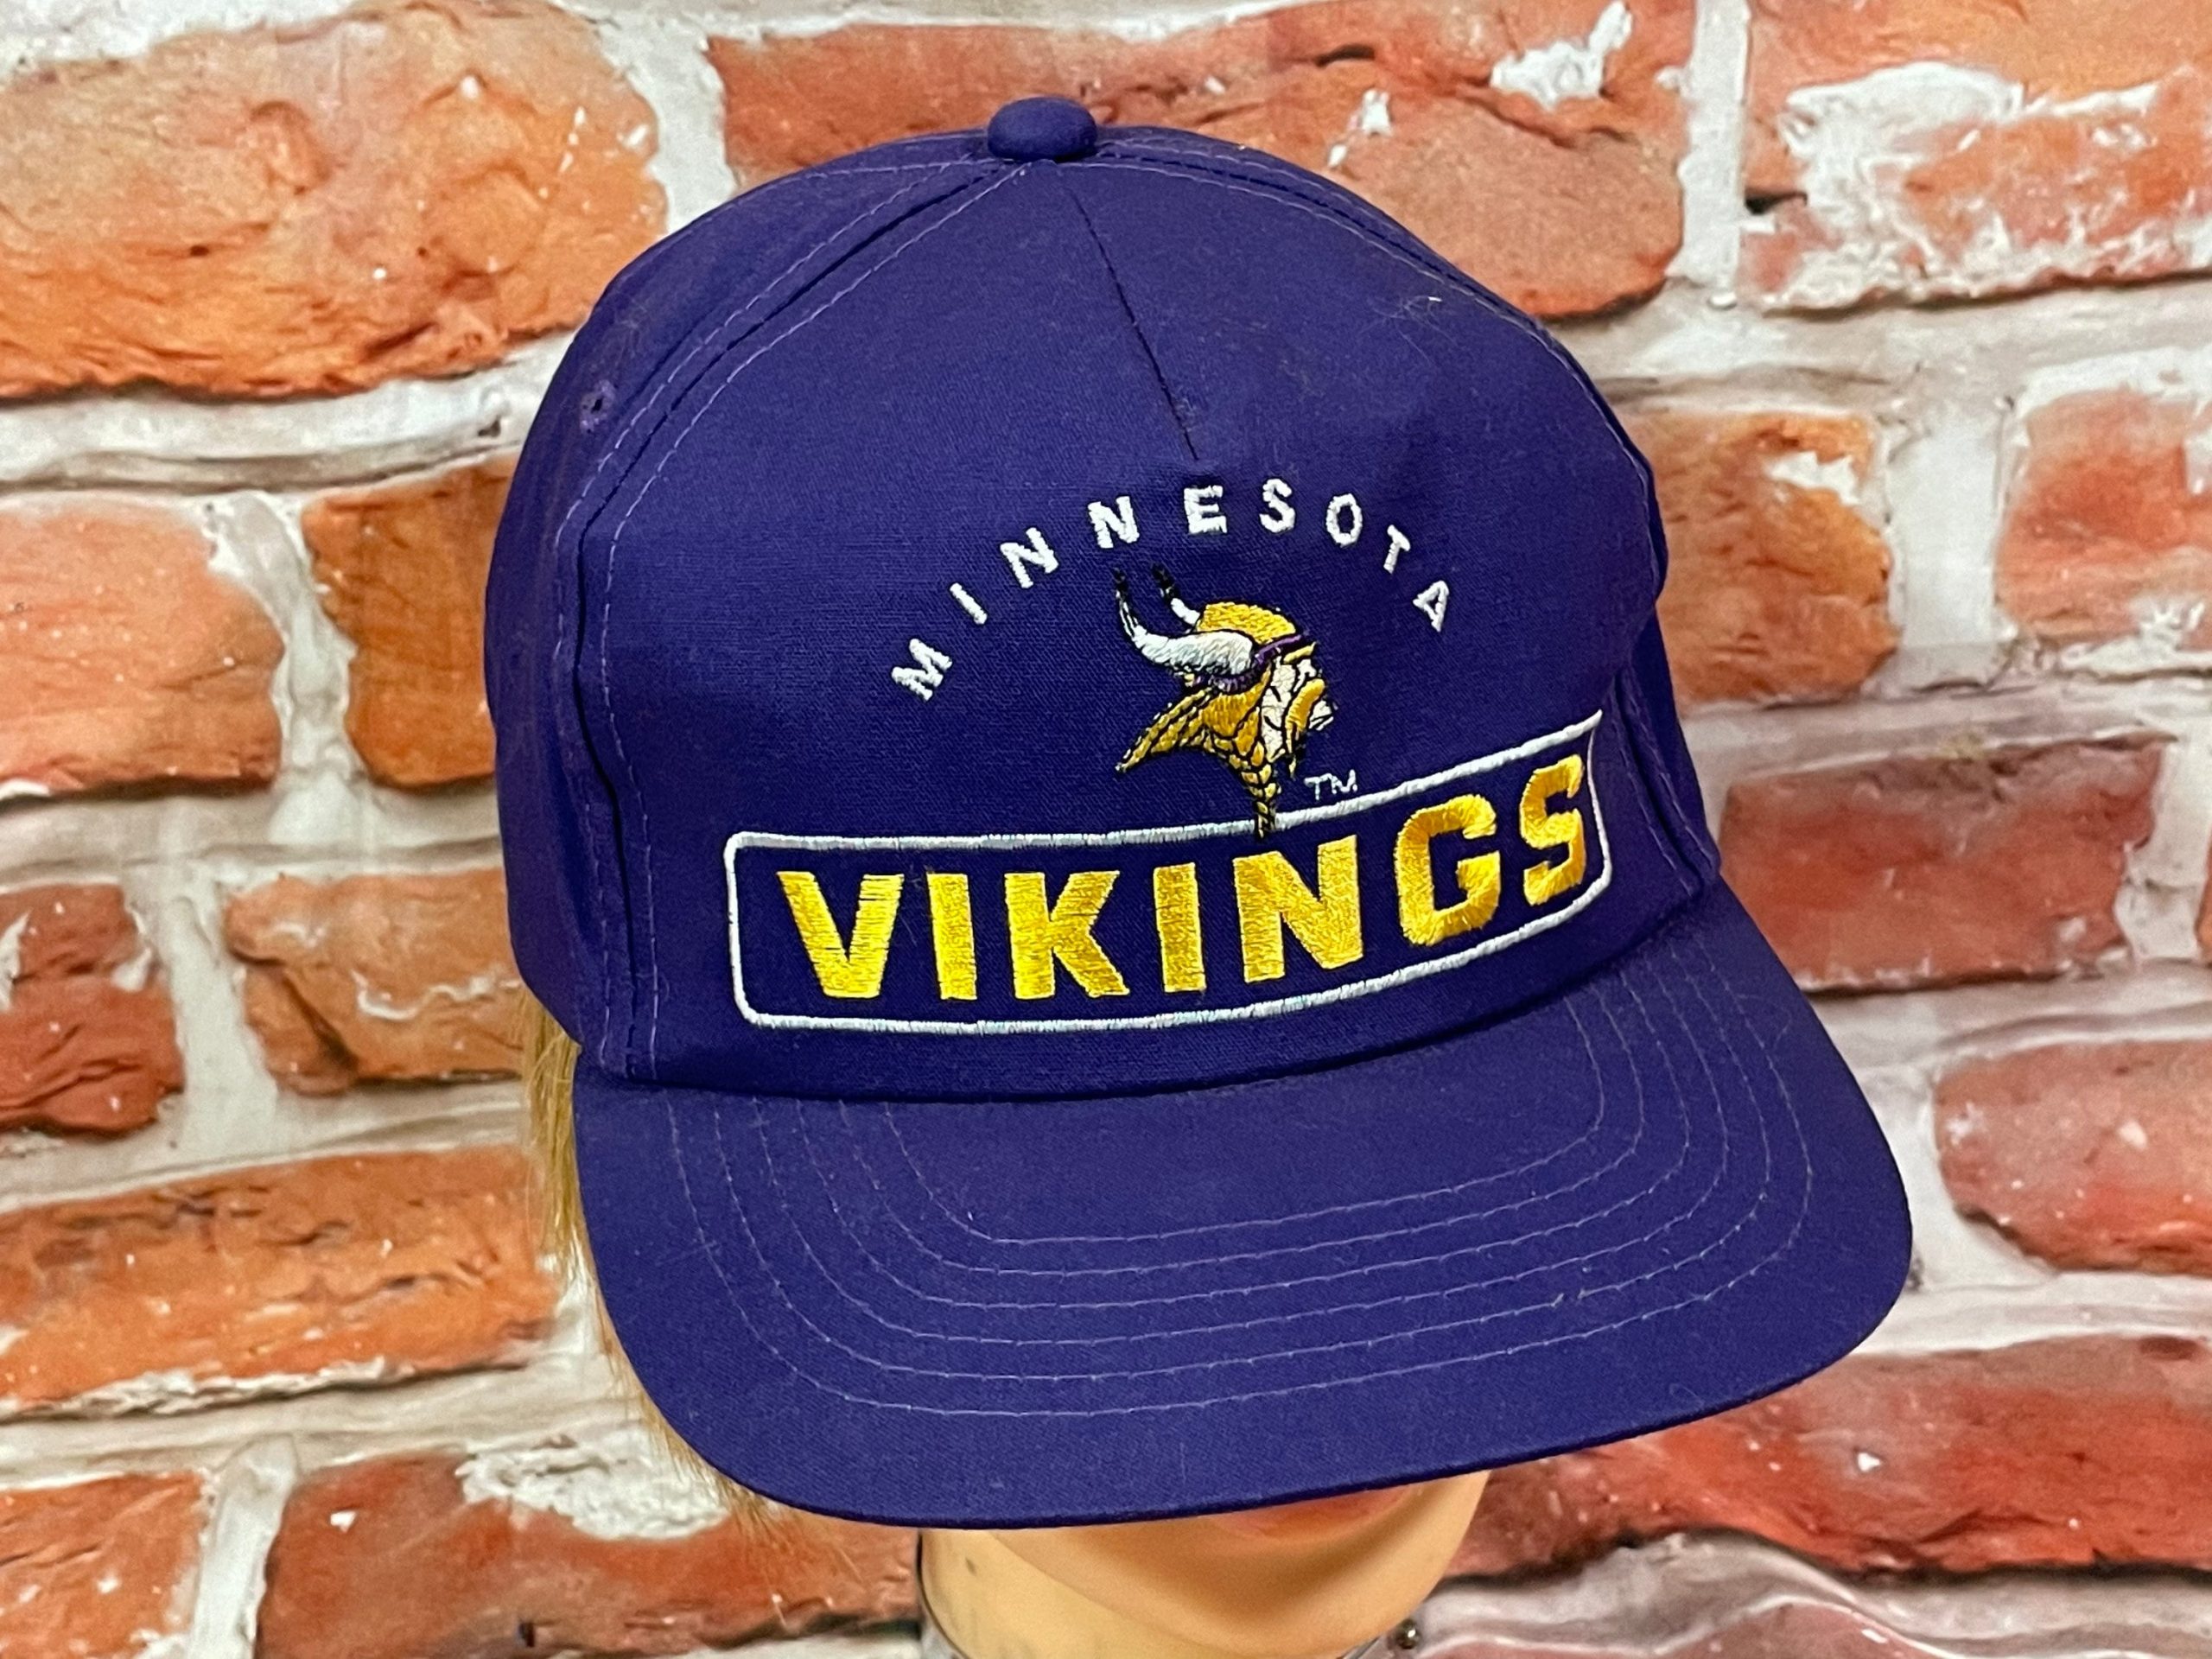 vikings hats